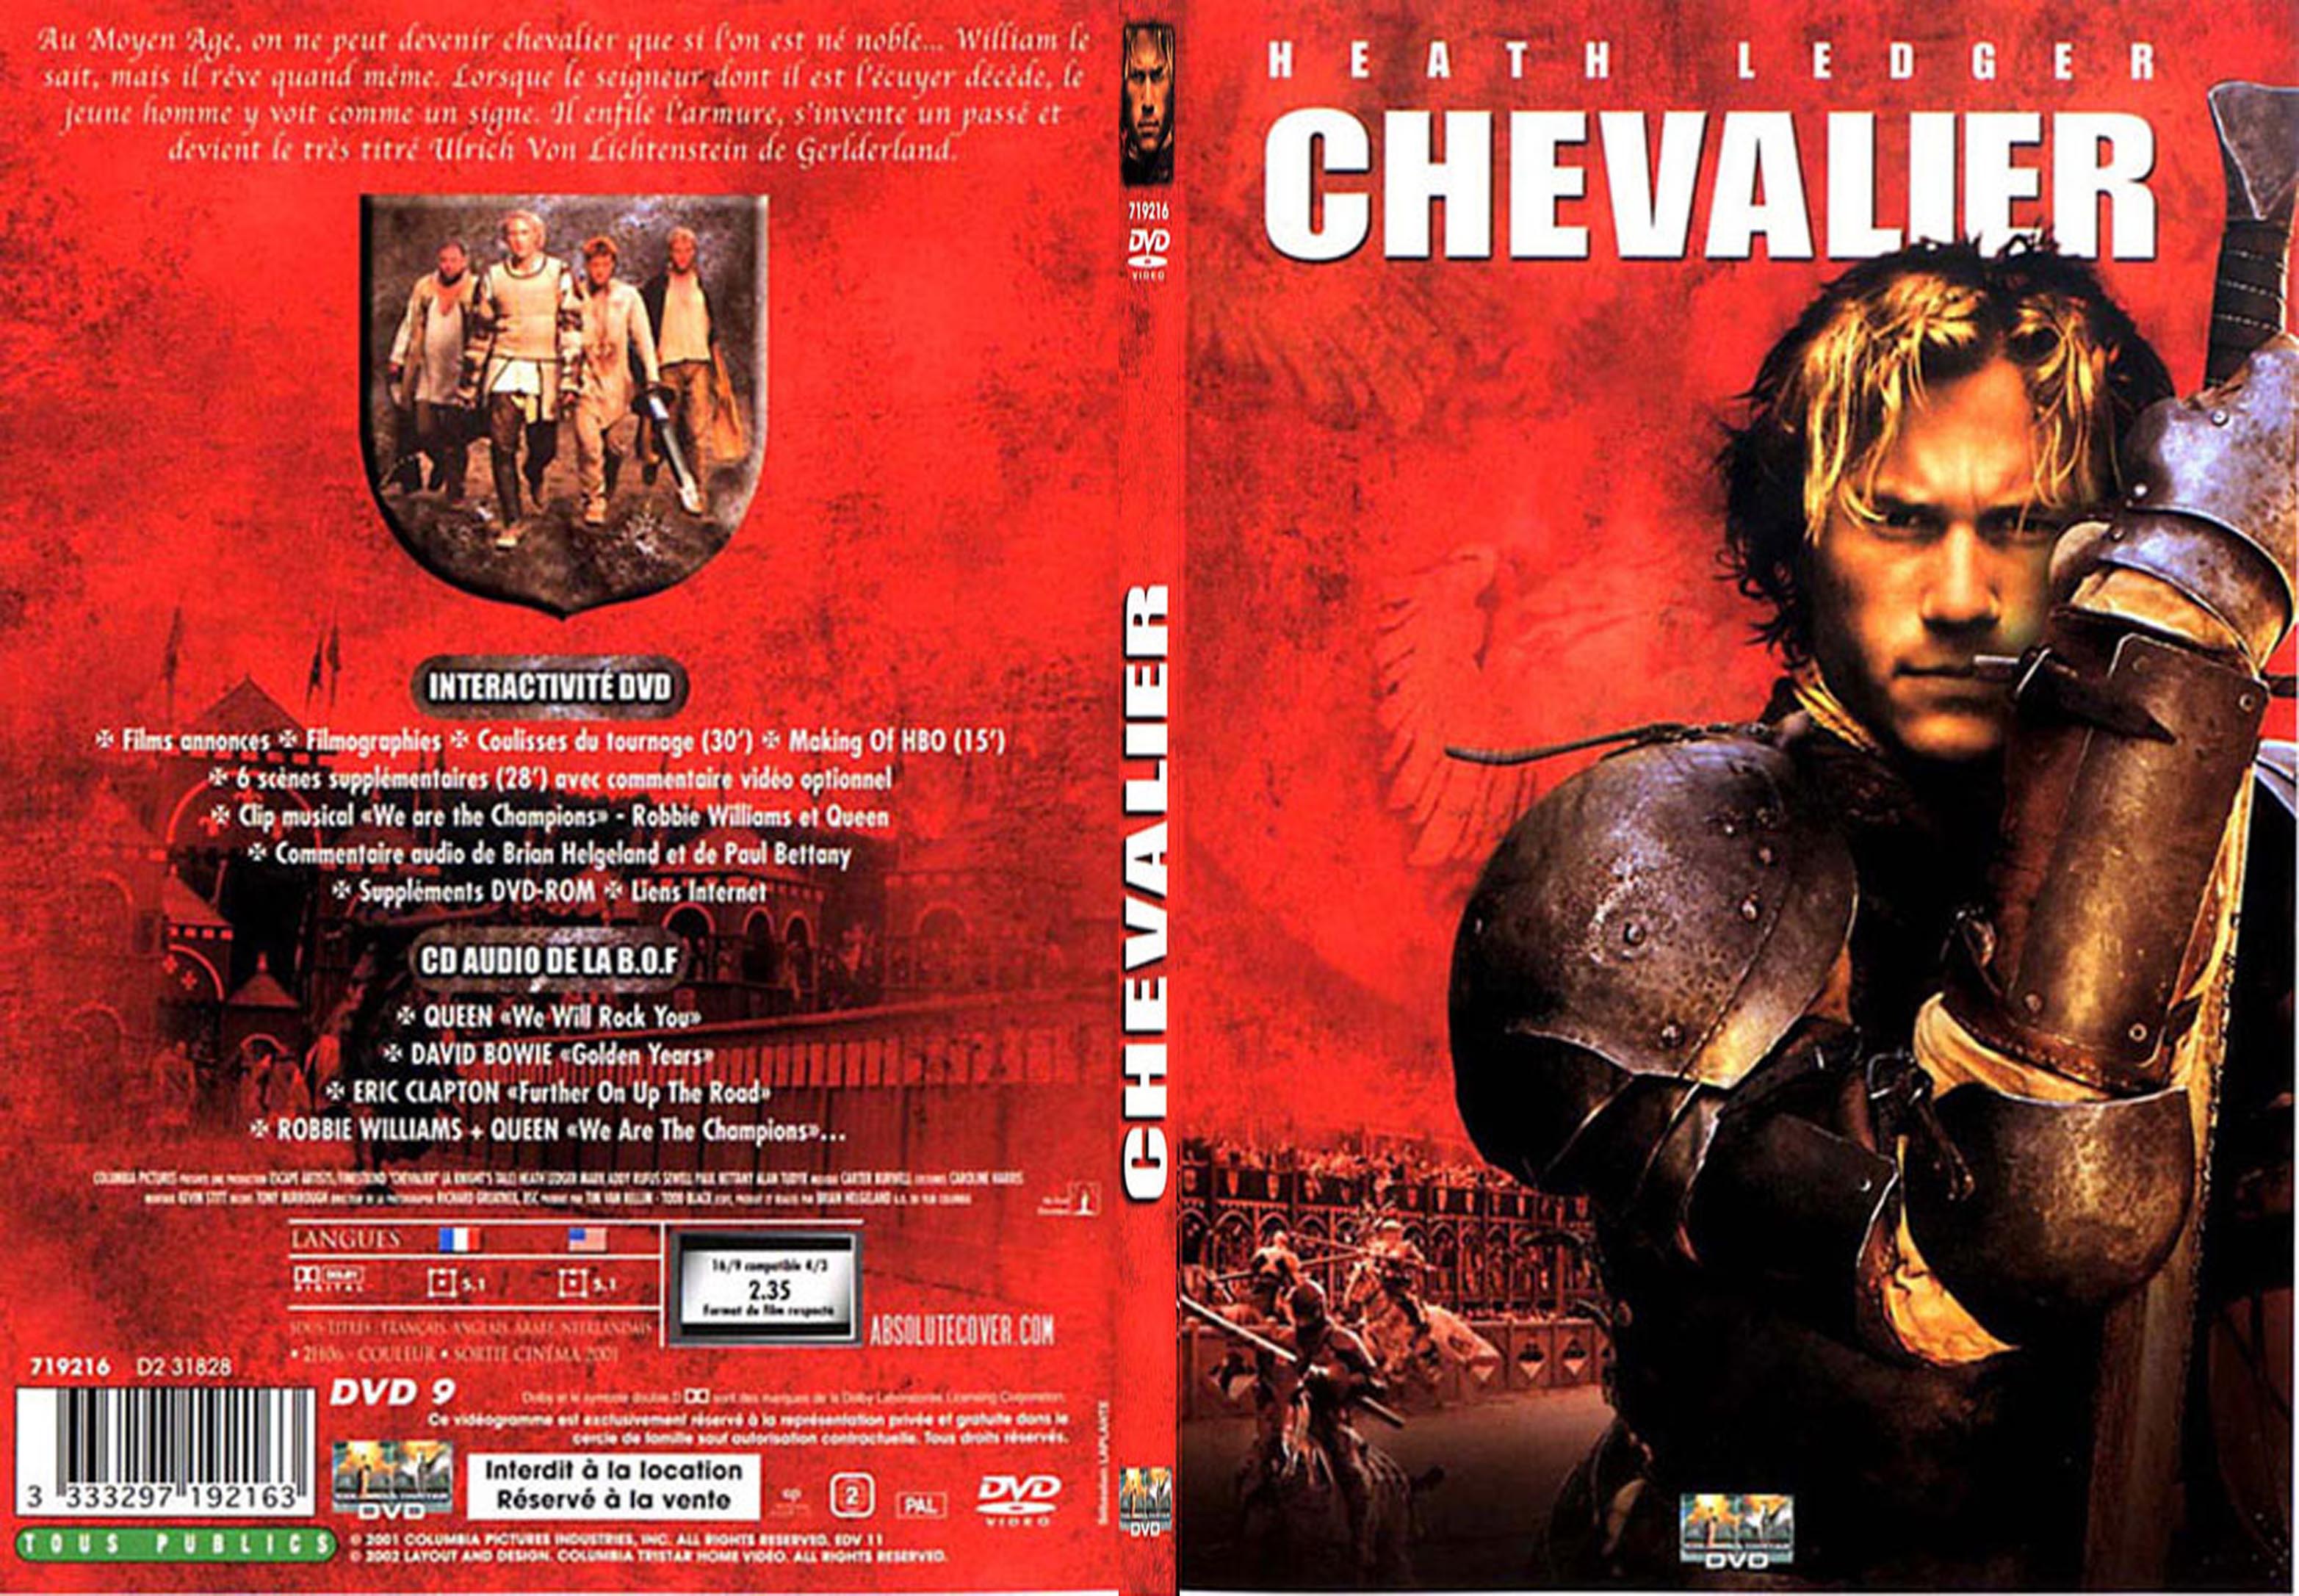 Jaquette DVD Chevalier - SLIM